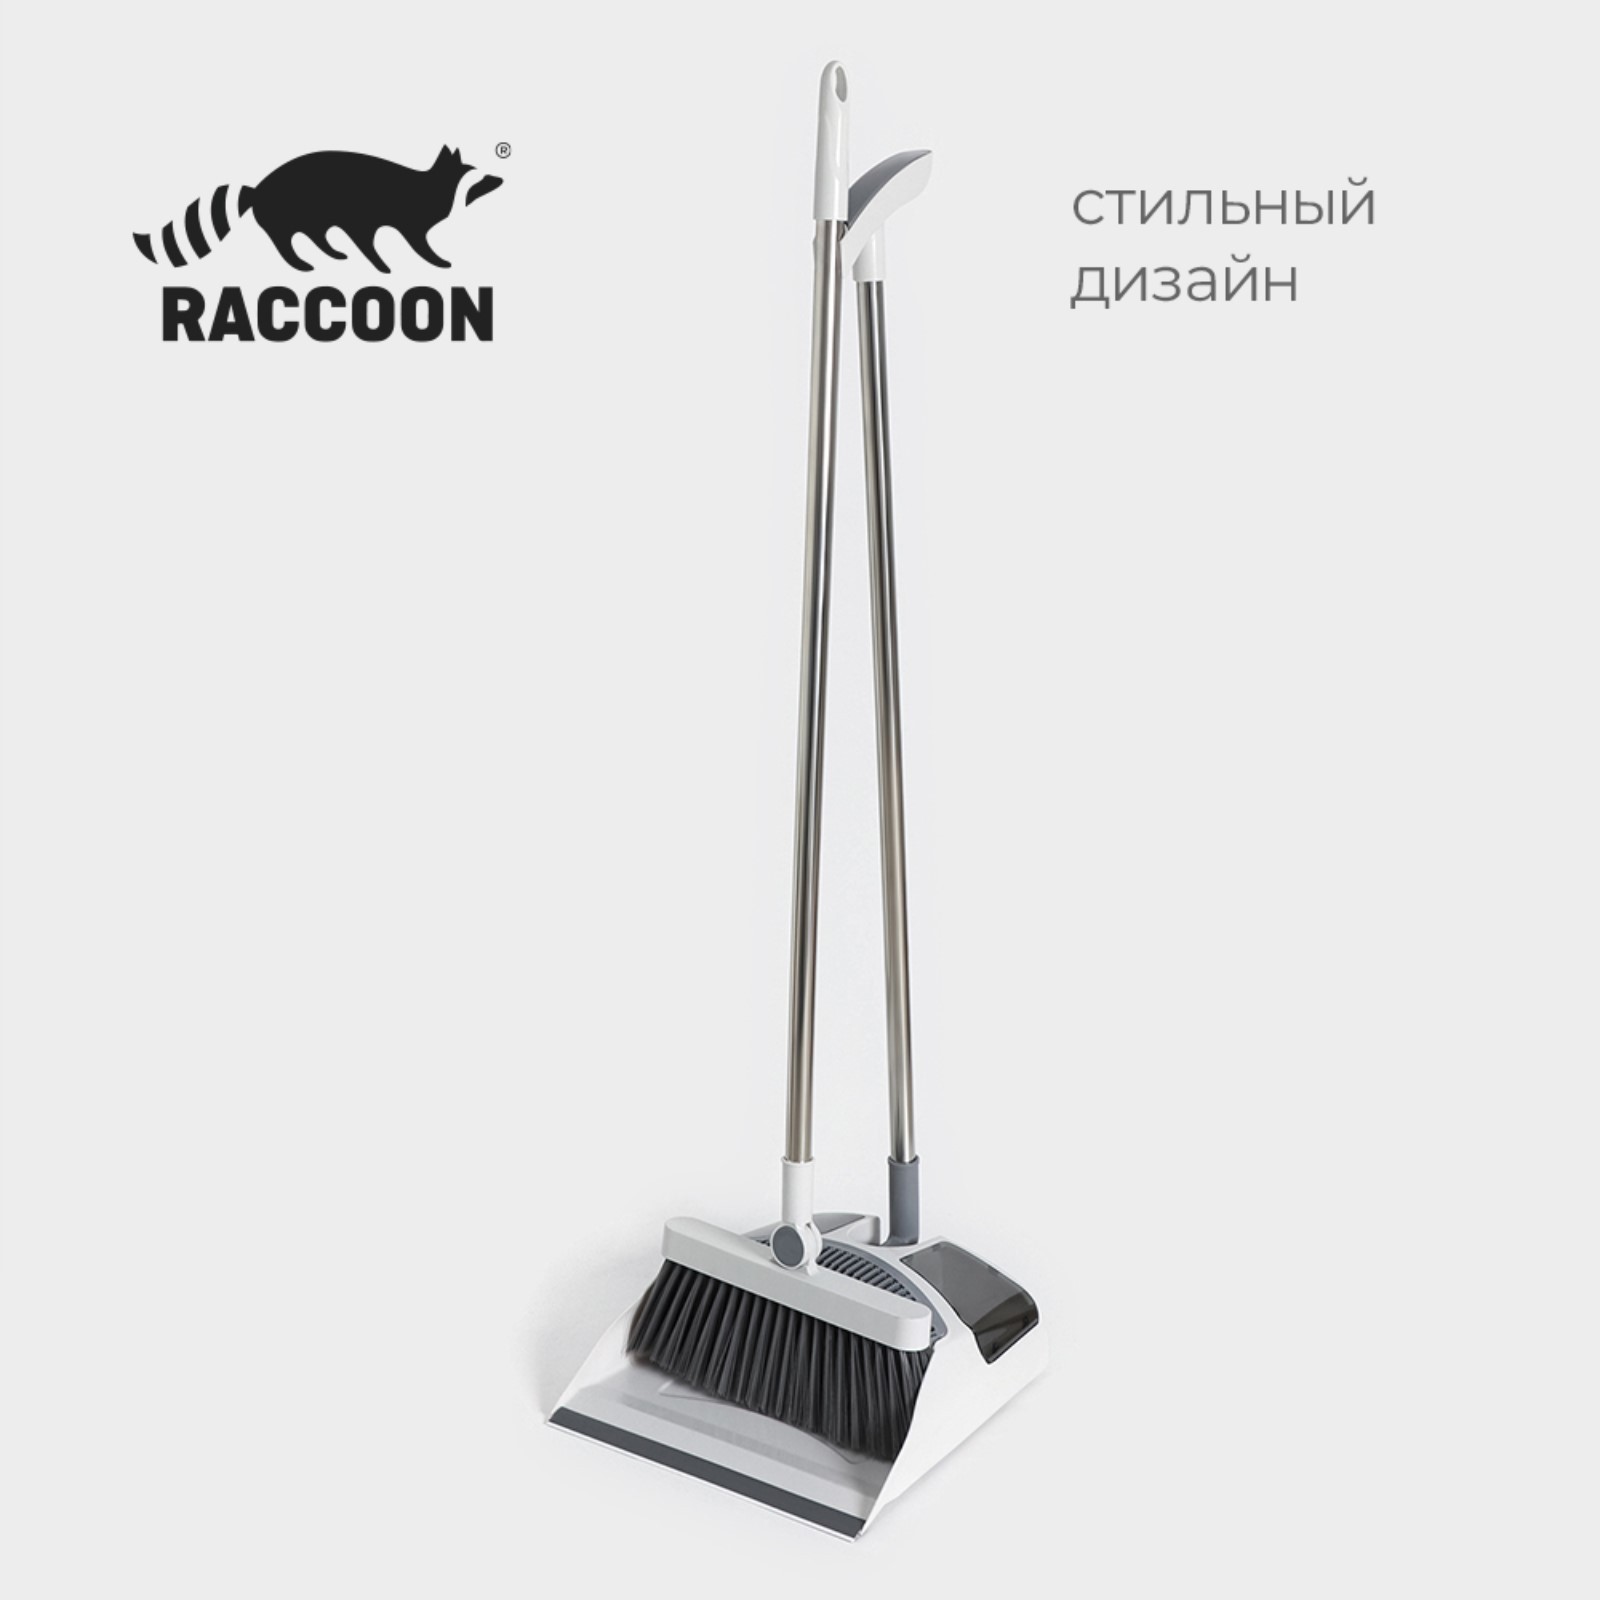 Щётка для пола с совком Raccoon: щётка 23x94 см, совок 28x27x89 см, цвет белый